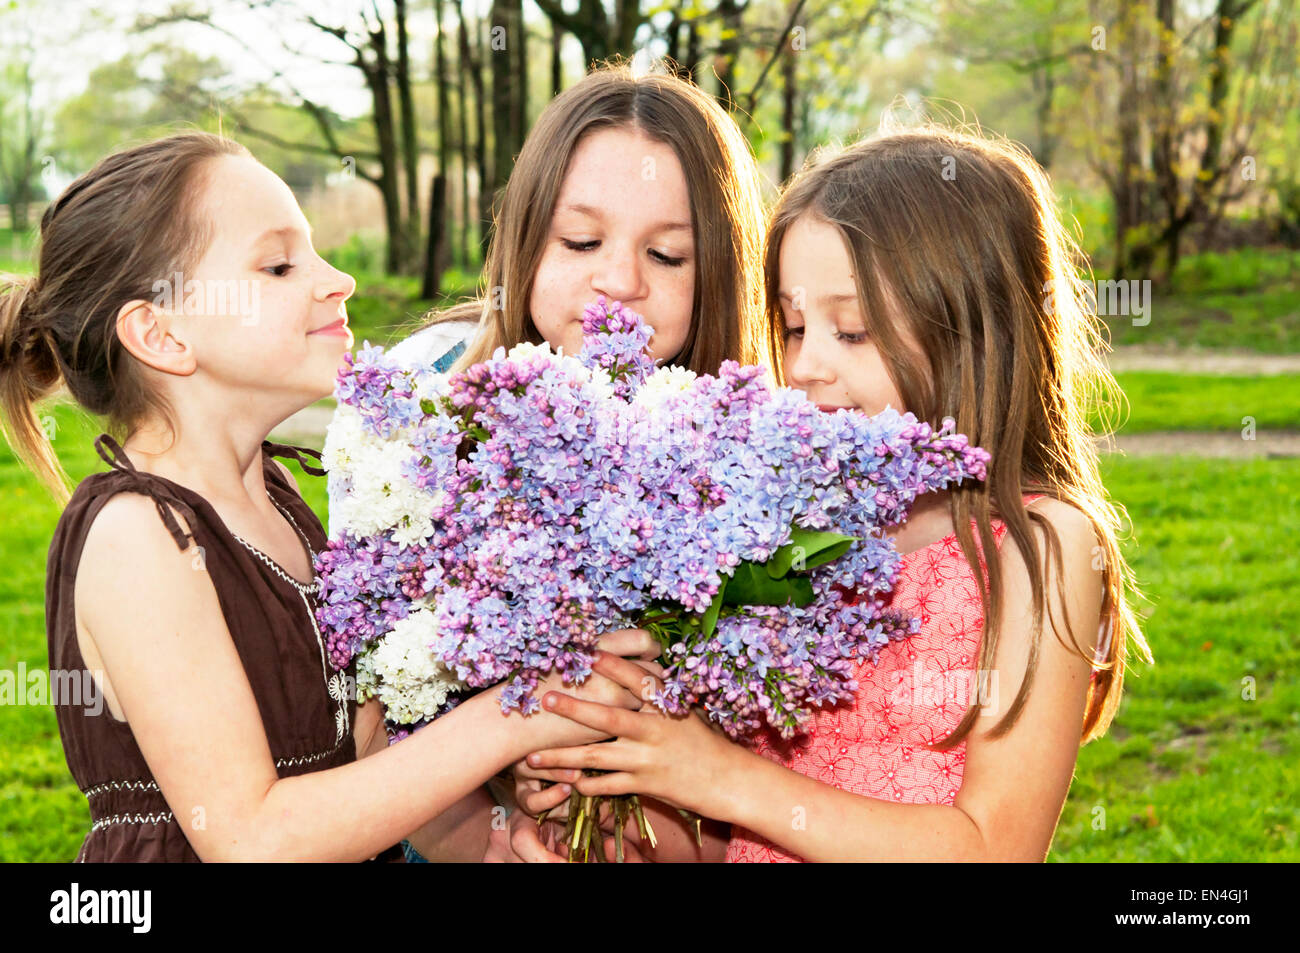 Drei Mädchen riechen lila Blumenstrauß zusammen Stockfoto